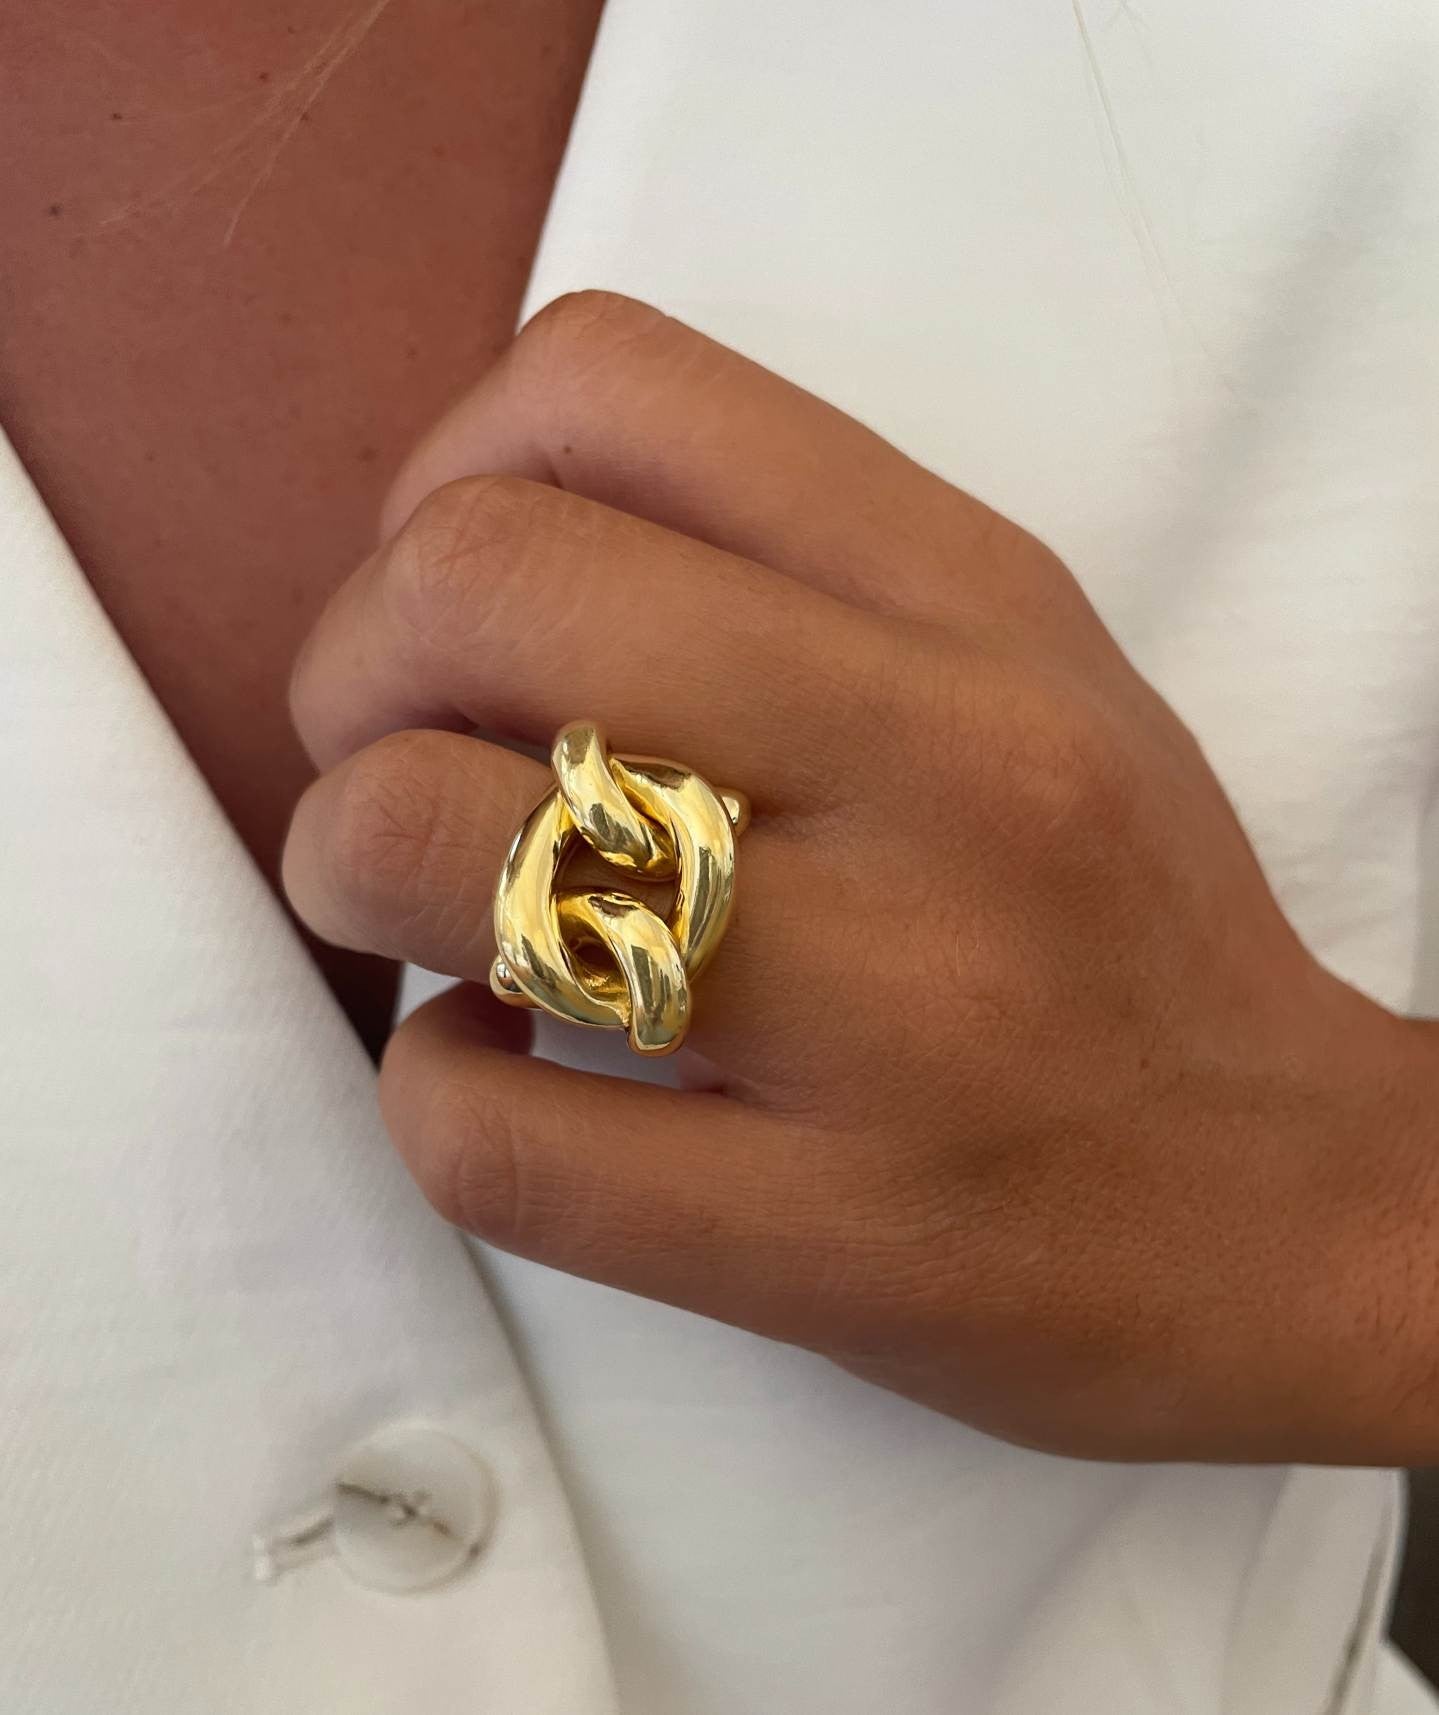 TROVADORA anillo ancho barbado brillo en plata 1ª ley bañada oro